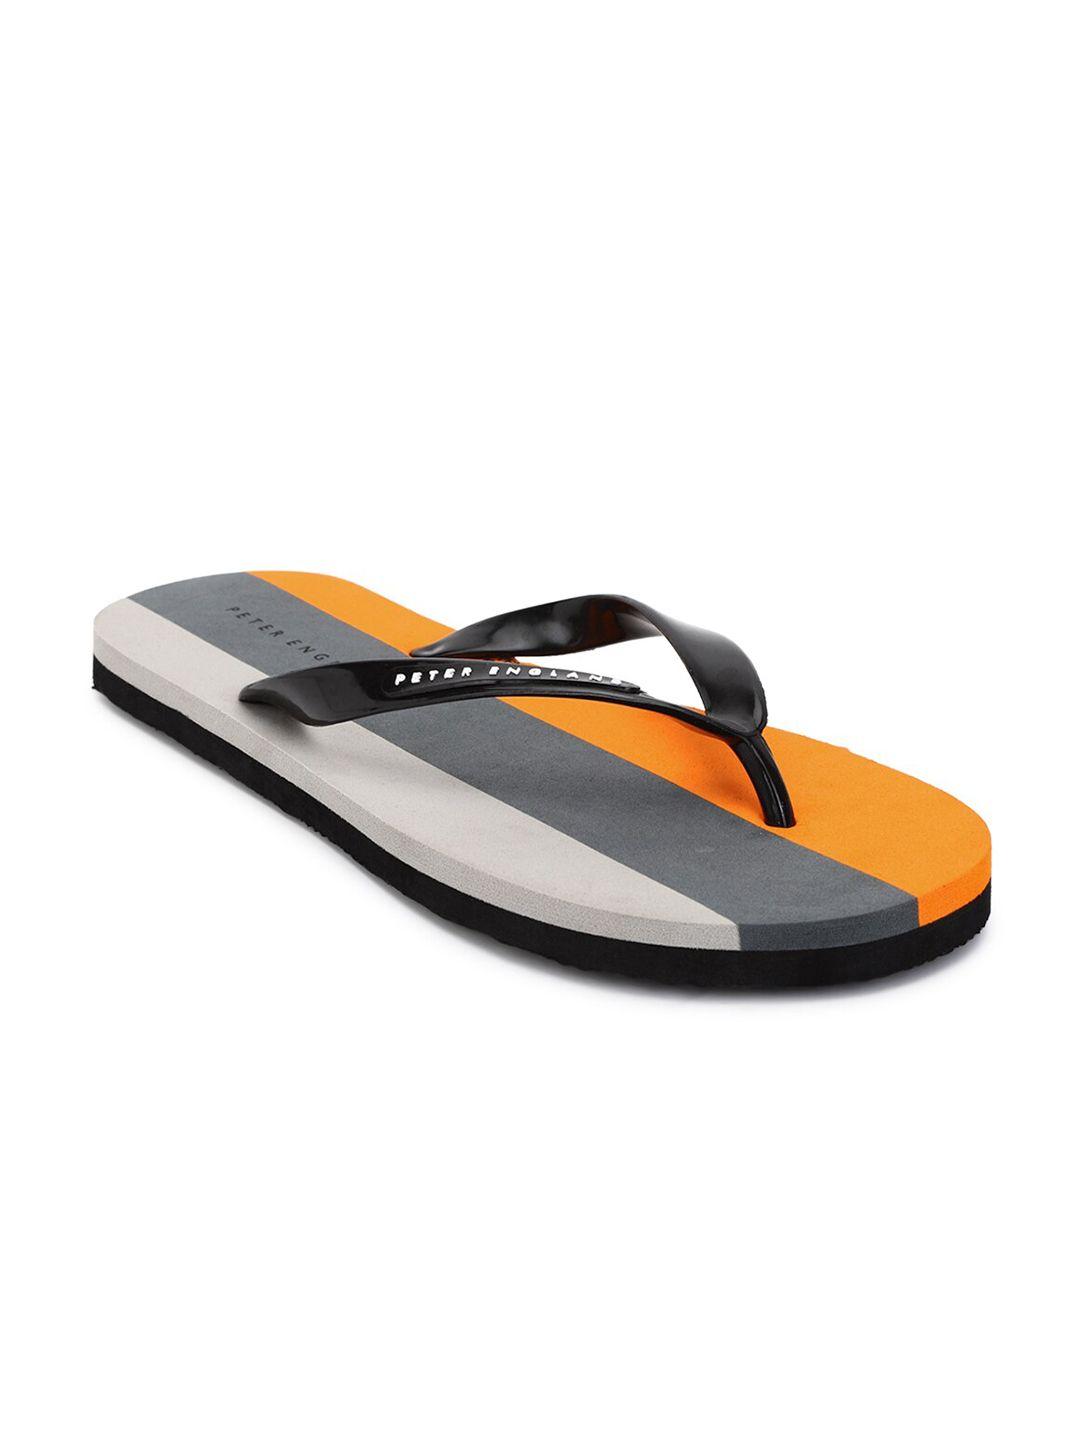 peter-england-men-orange-&-black-striped-thong-flip-flops